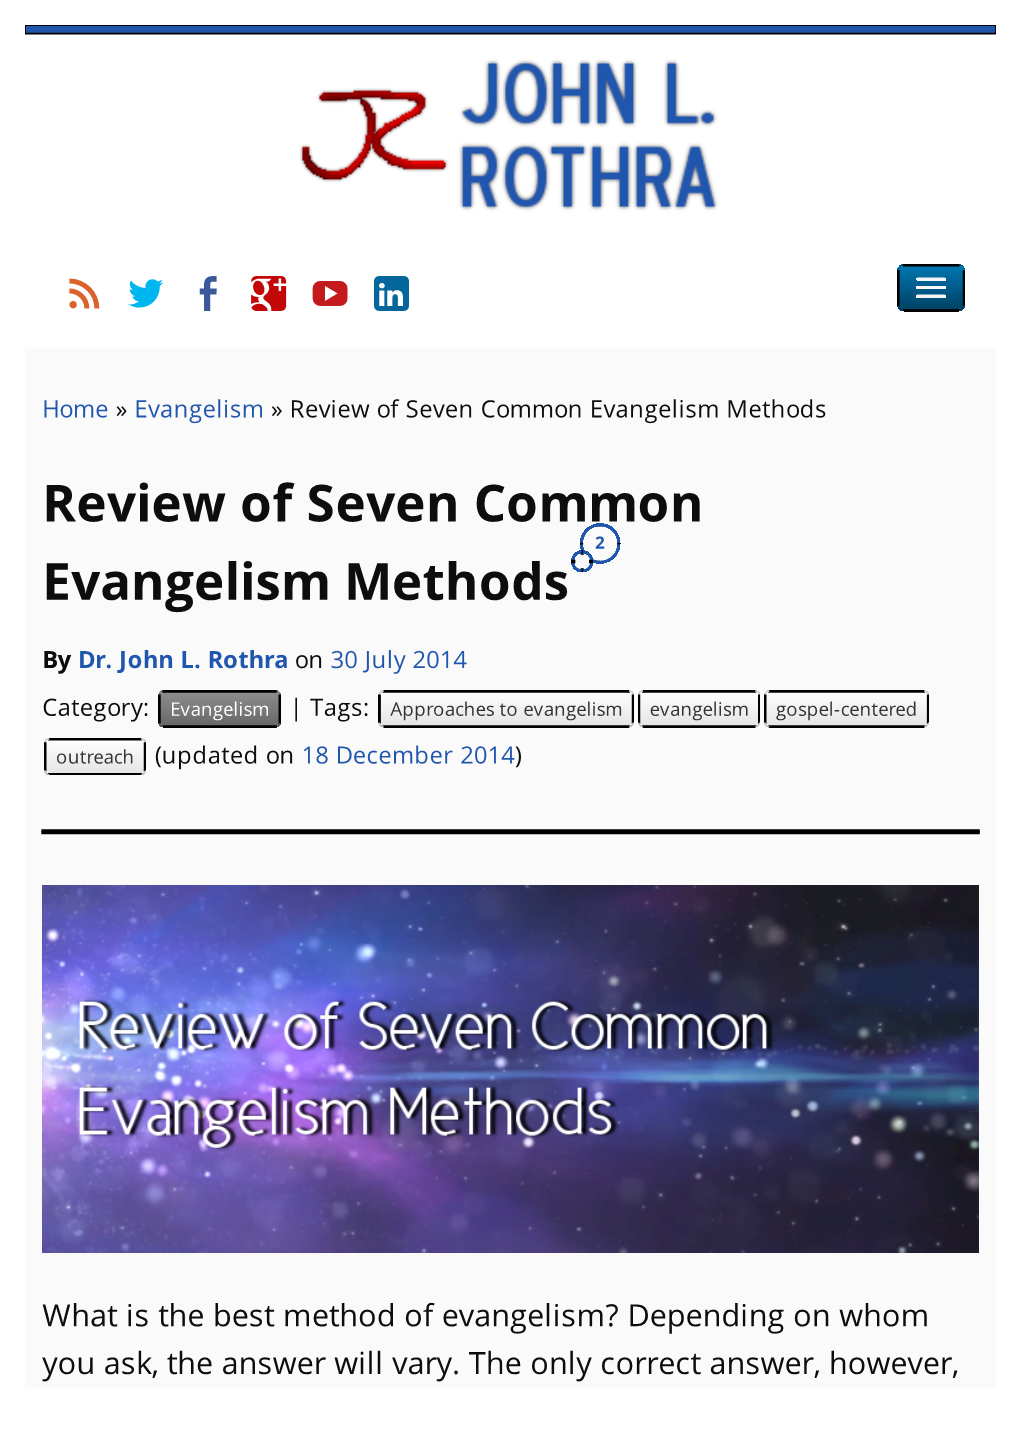 Review of Seven Common Evangelism Methods